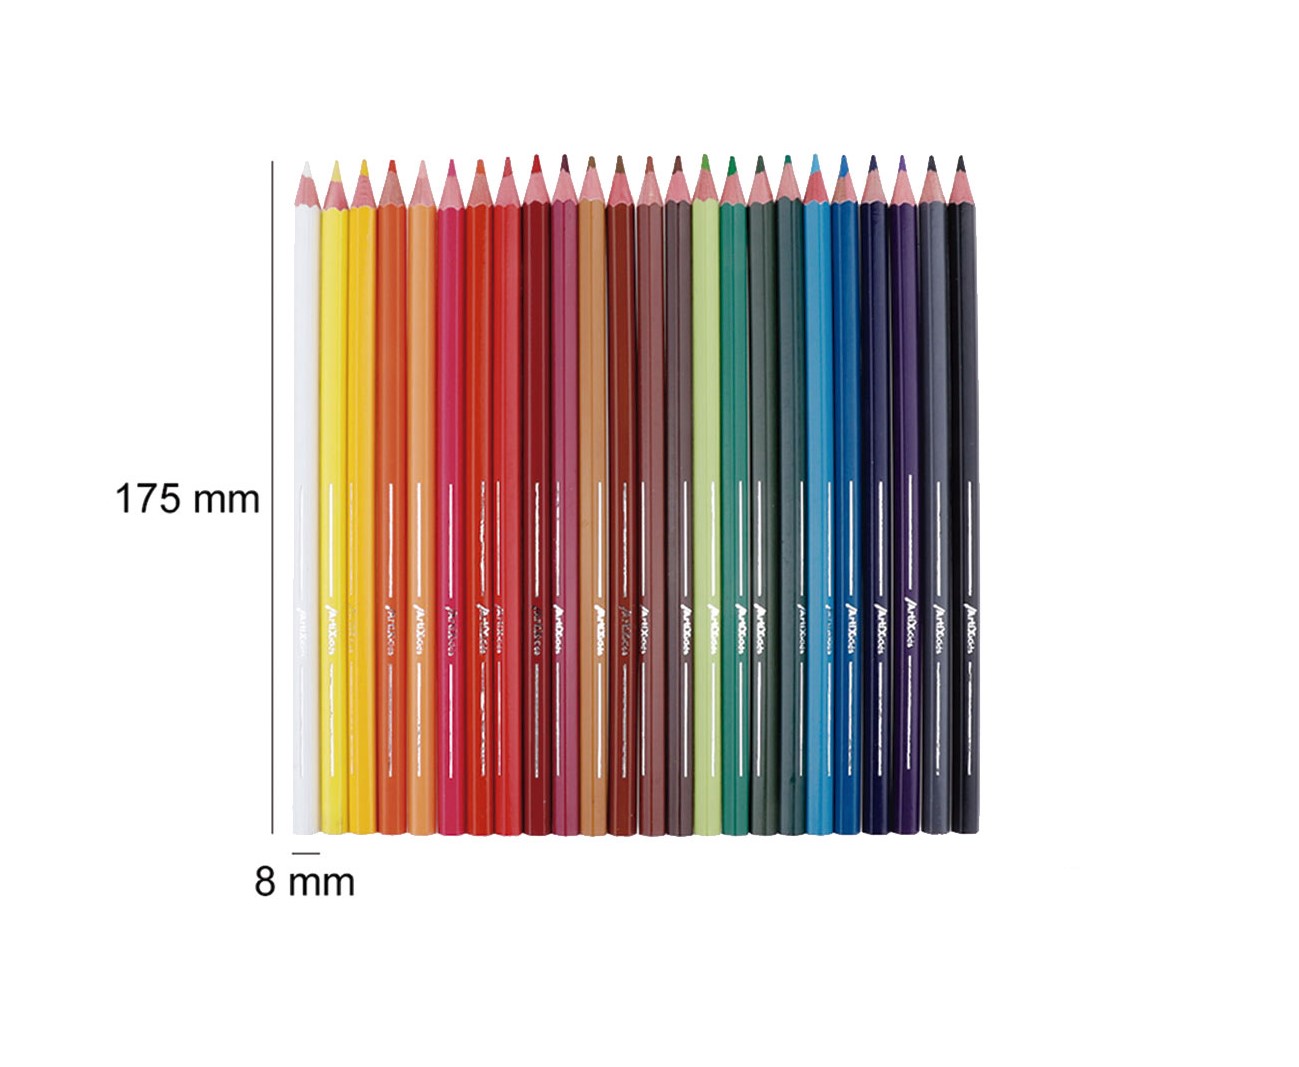 Lápices de colores 24uds